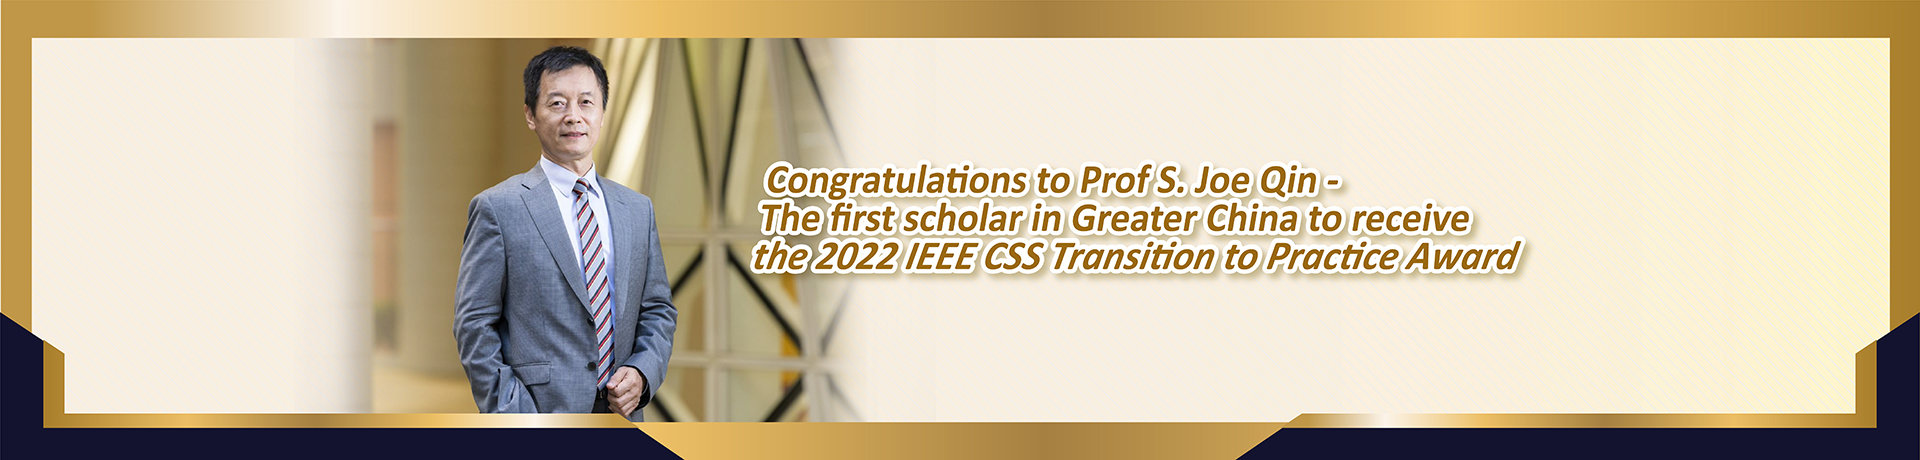 Congratulations to Prof S. Joe Qin